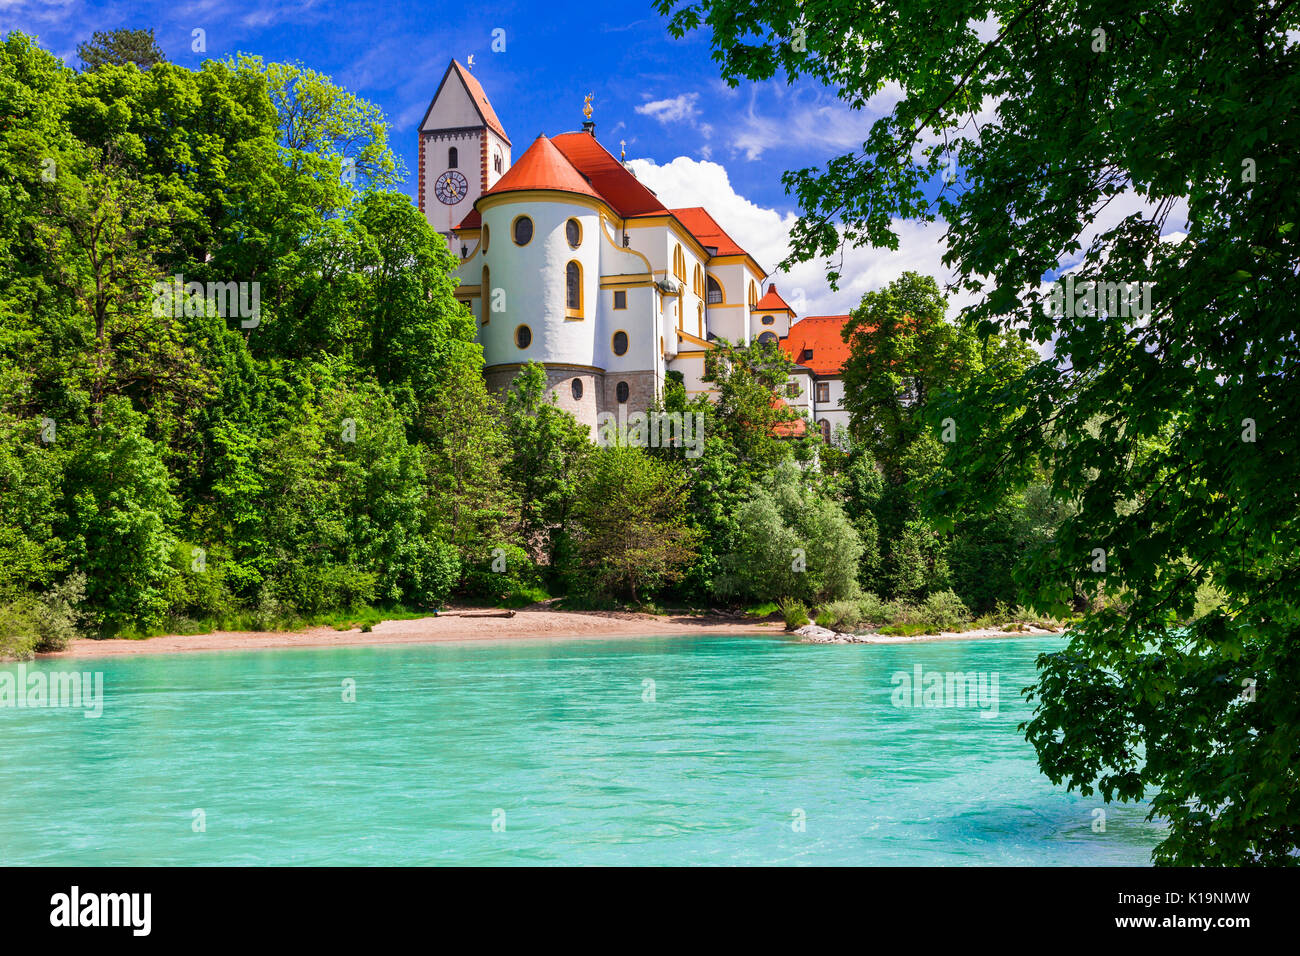 Fussen impressionnant village et château sur la rivière, Bavière, en Allemagne. Banque D'Images